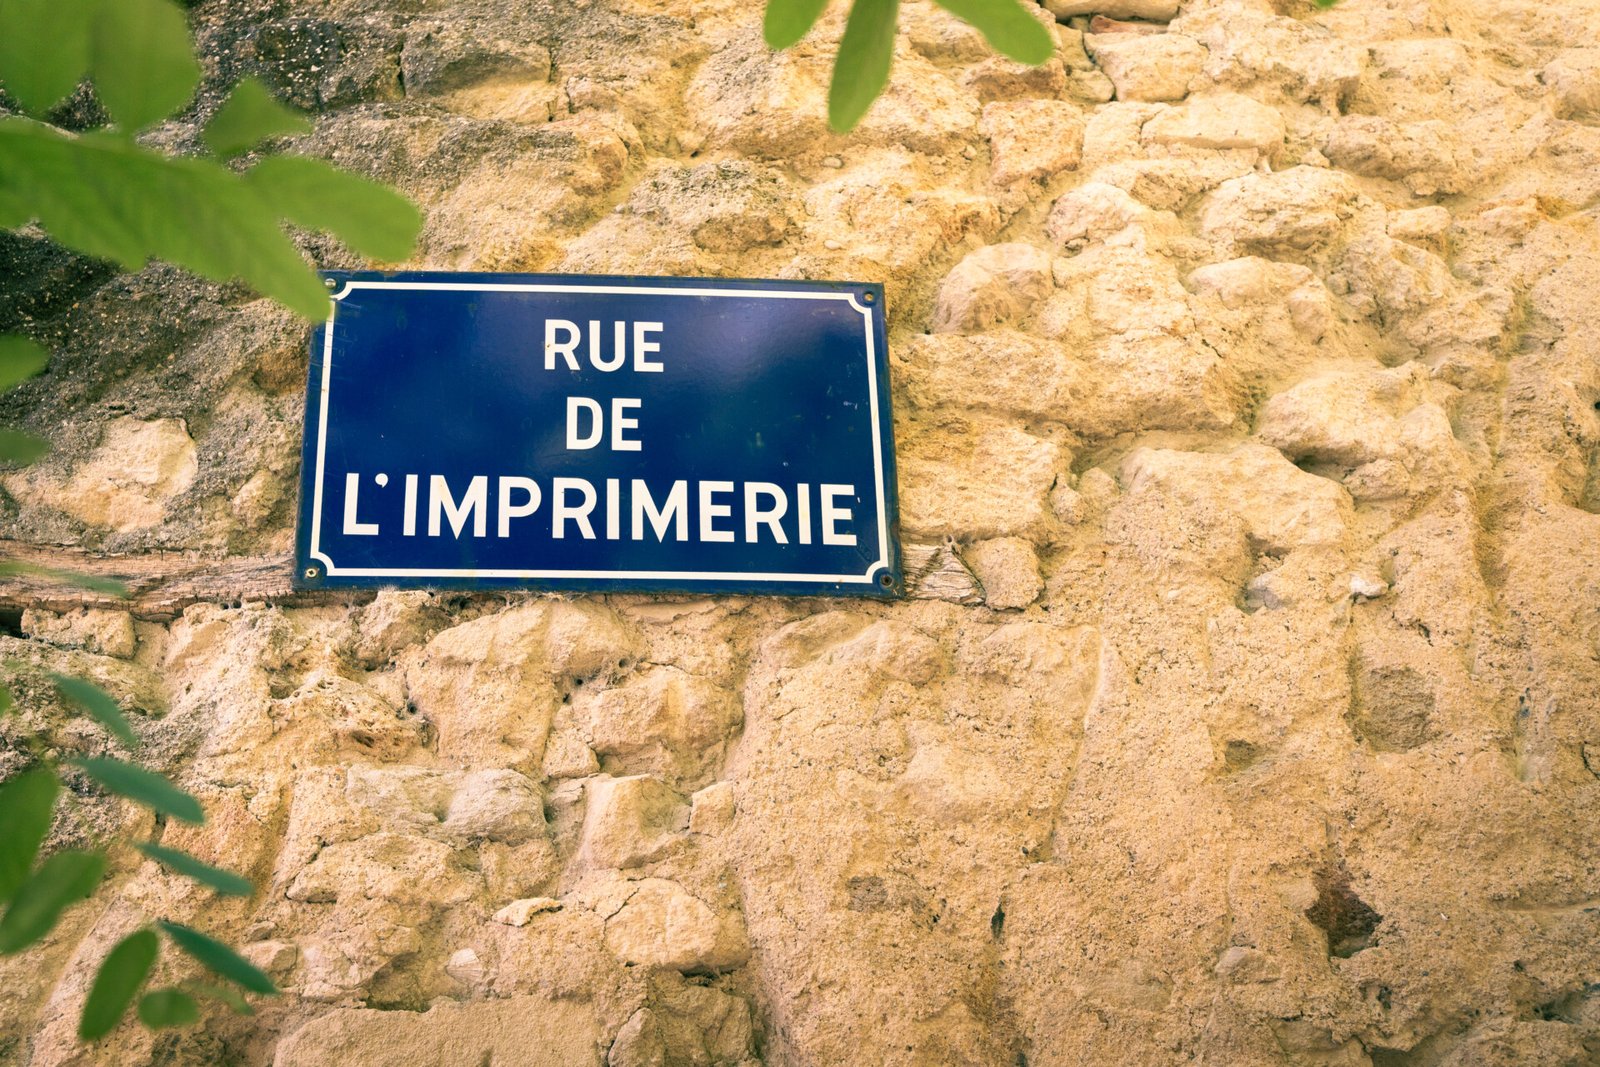 Panneau de rue sur un mu en pierre indiquant "Rue de l'imprimerie"